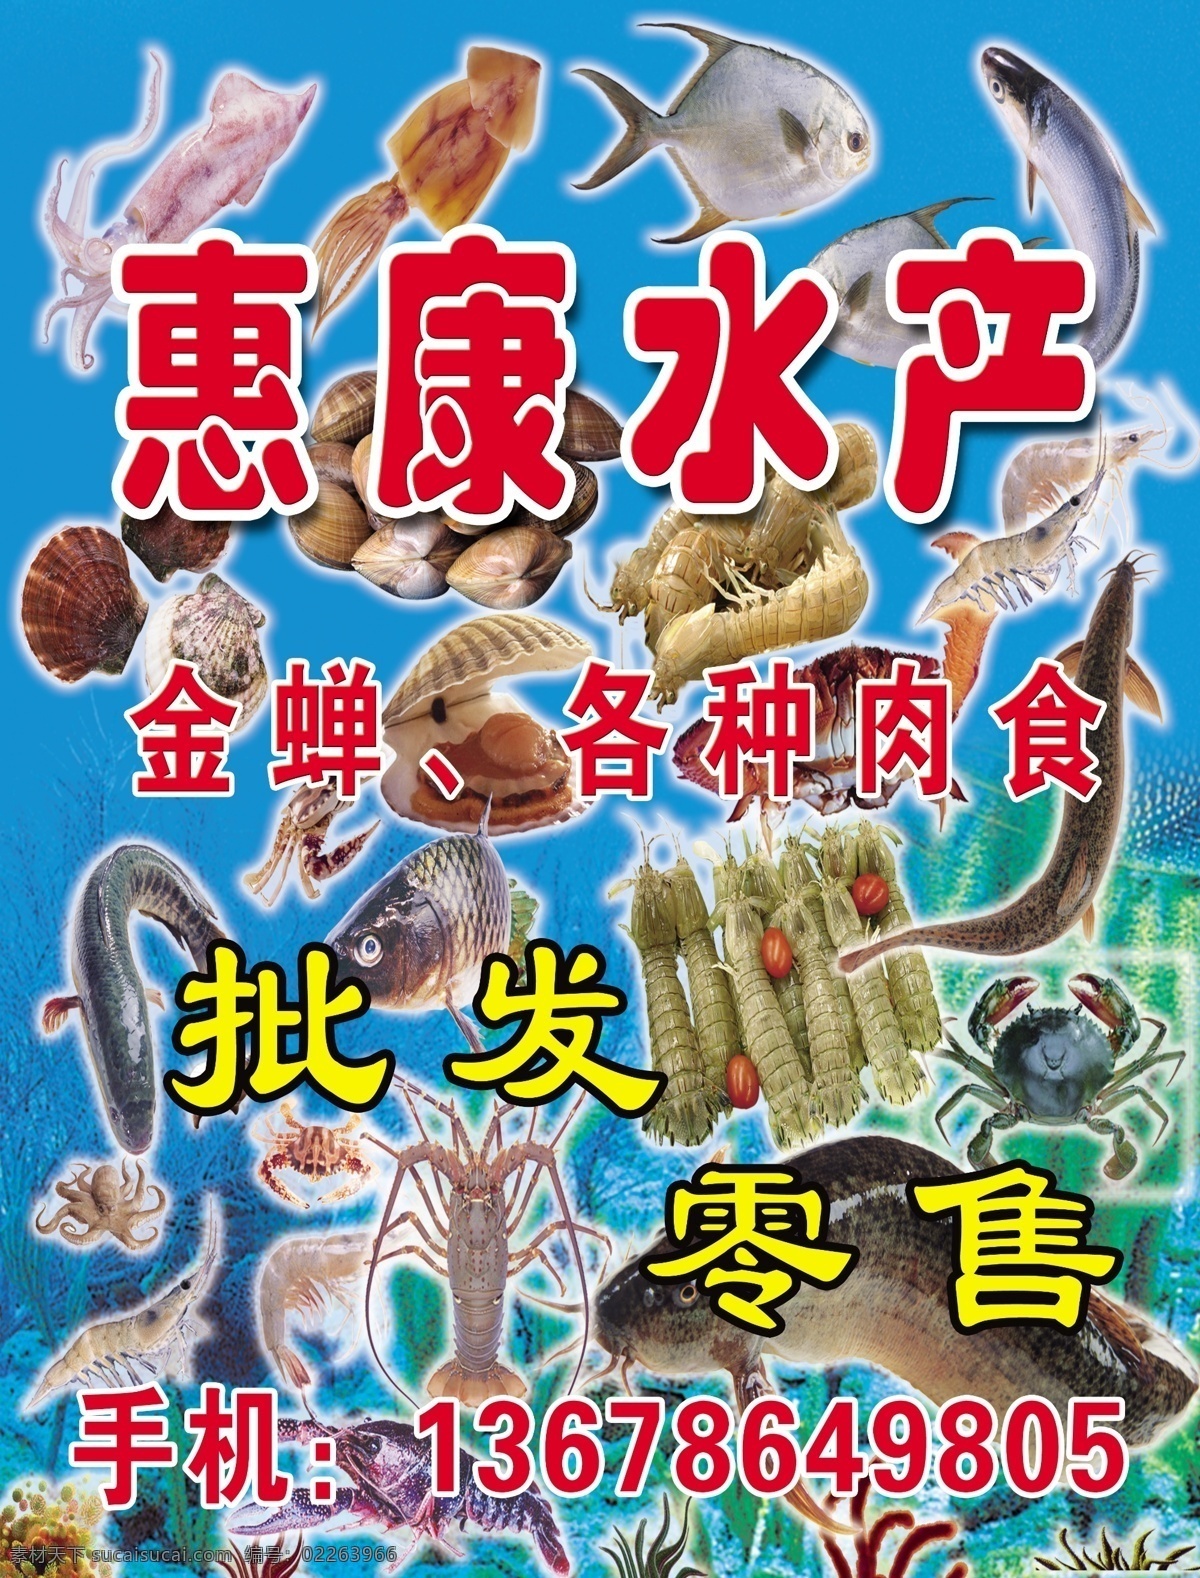 惠康水产 鱼 虾 各种水产品 海鲜 模板 儿童 dm宣传单 广告设计模板 源文件